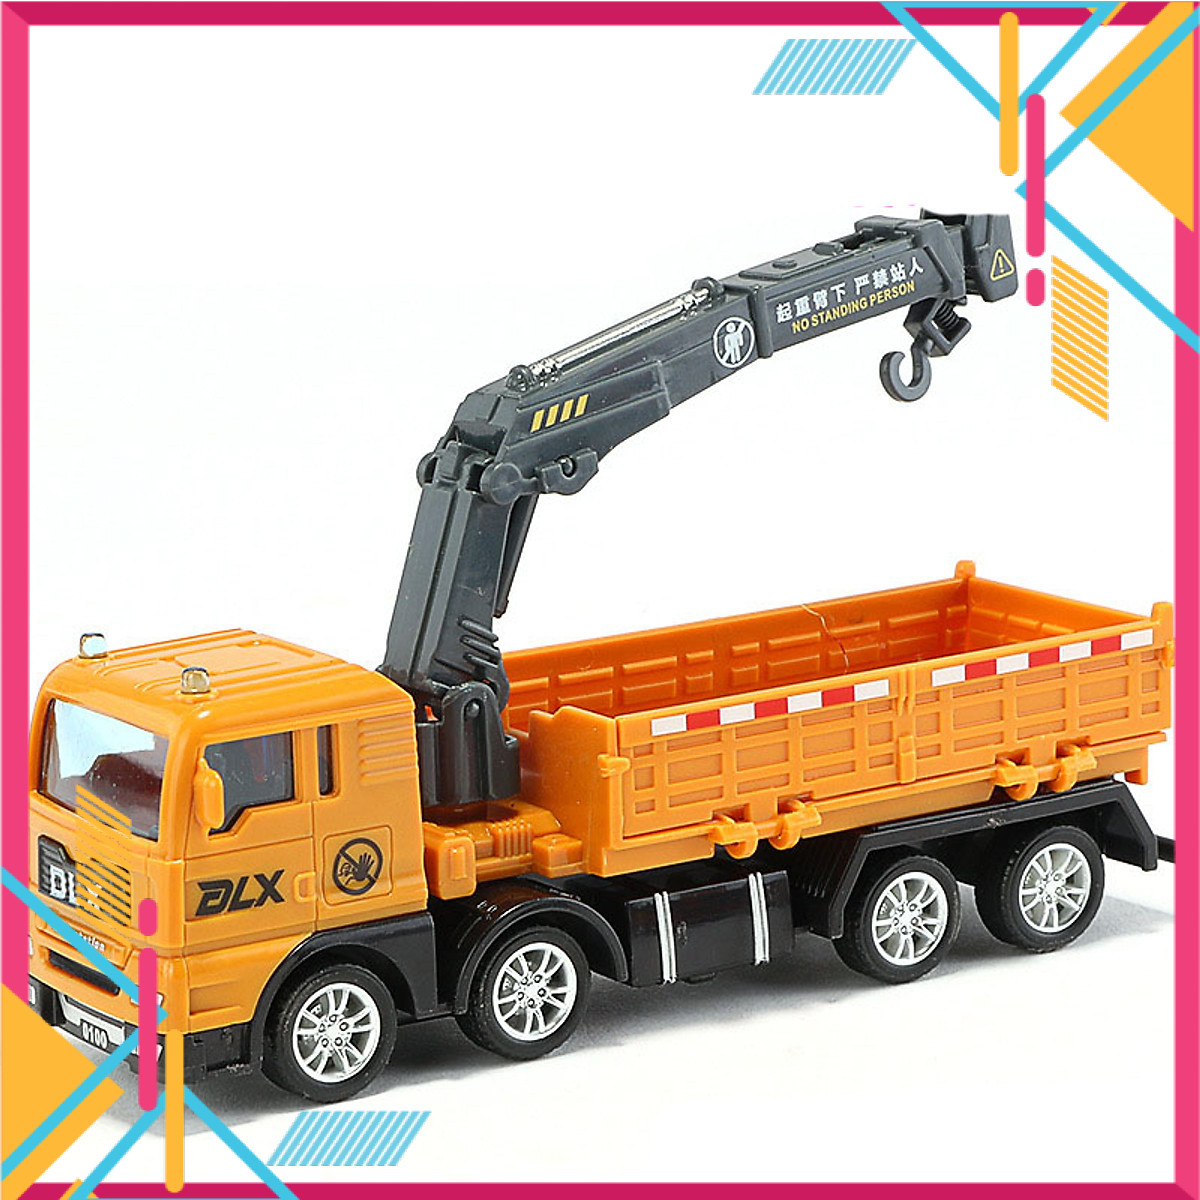 Mua Ngay Xe đồ chơi mô hình KAVY xe tải nâng hàng cho bé chất liệu nhựa an toàn, kích thước lớn Giúp Trẻ Phát Triển